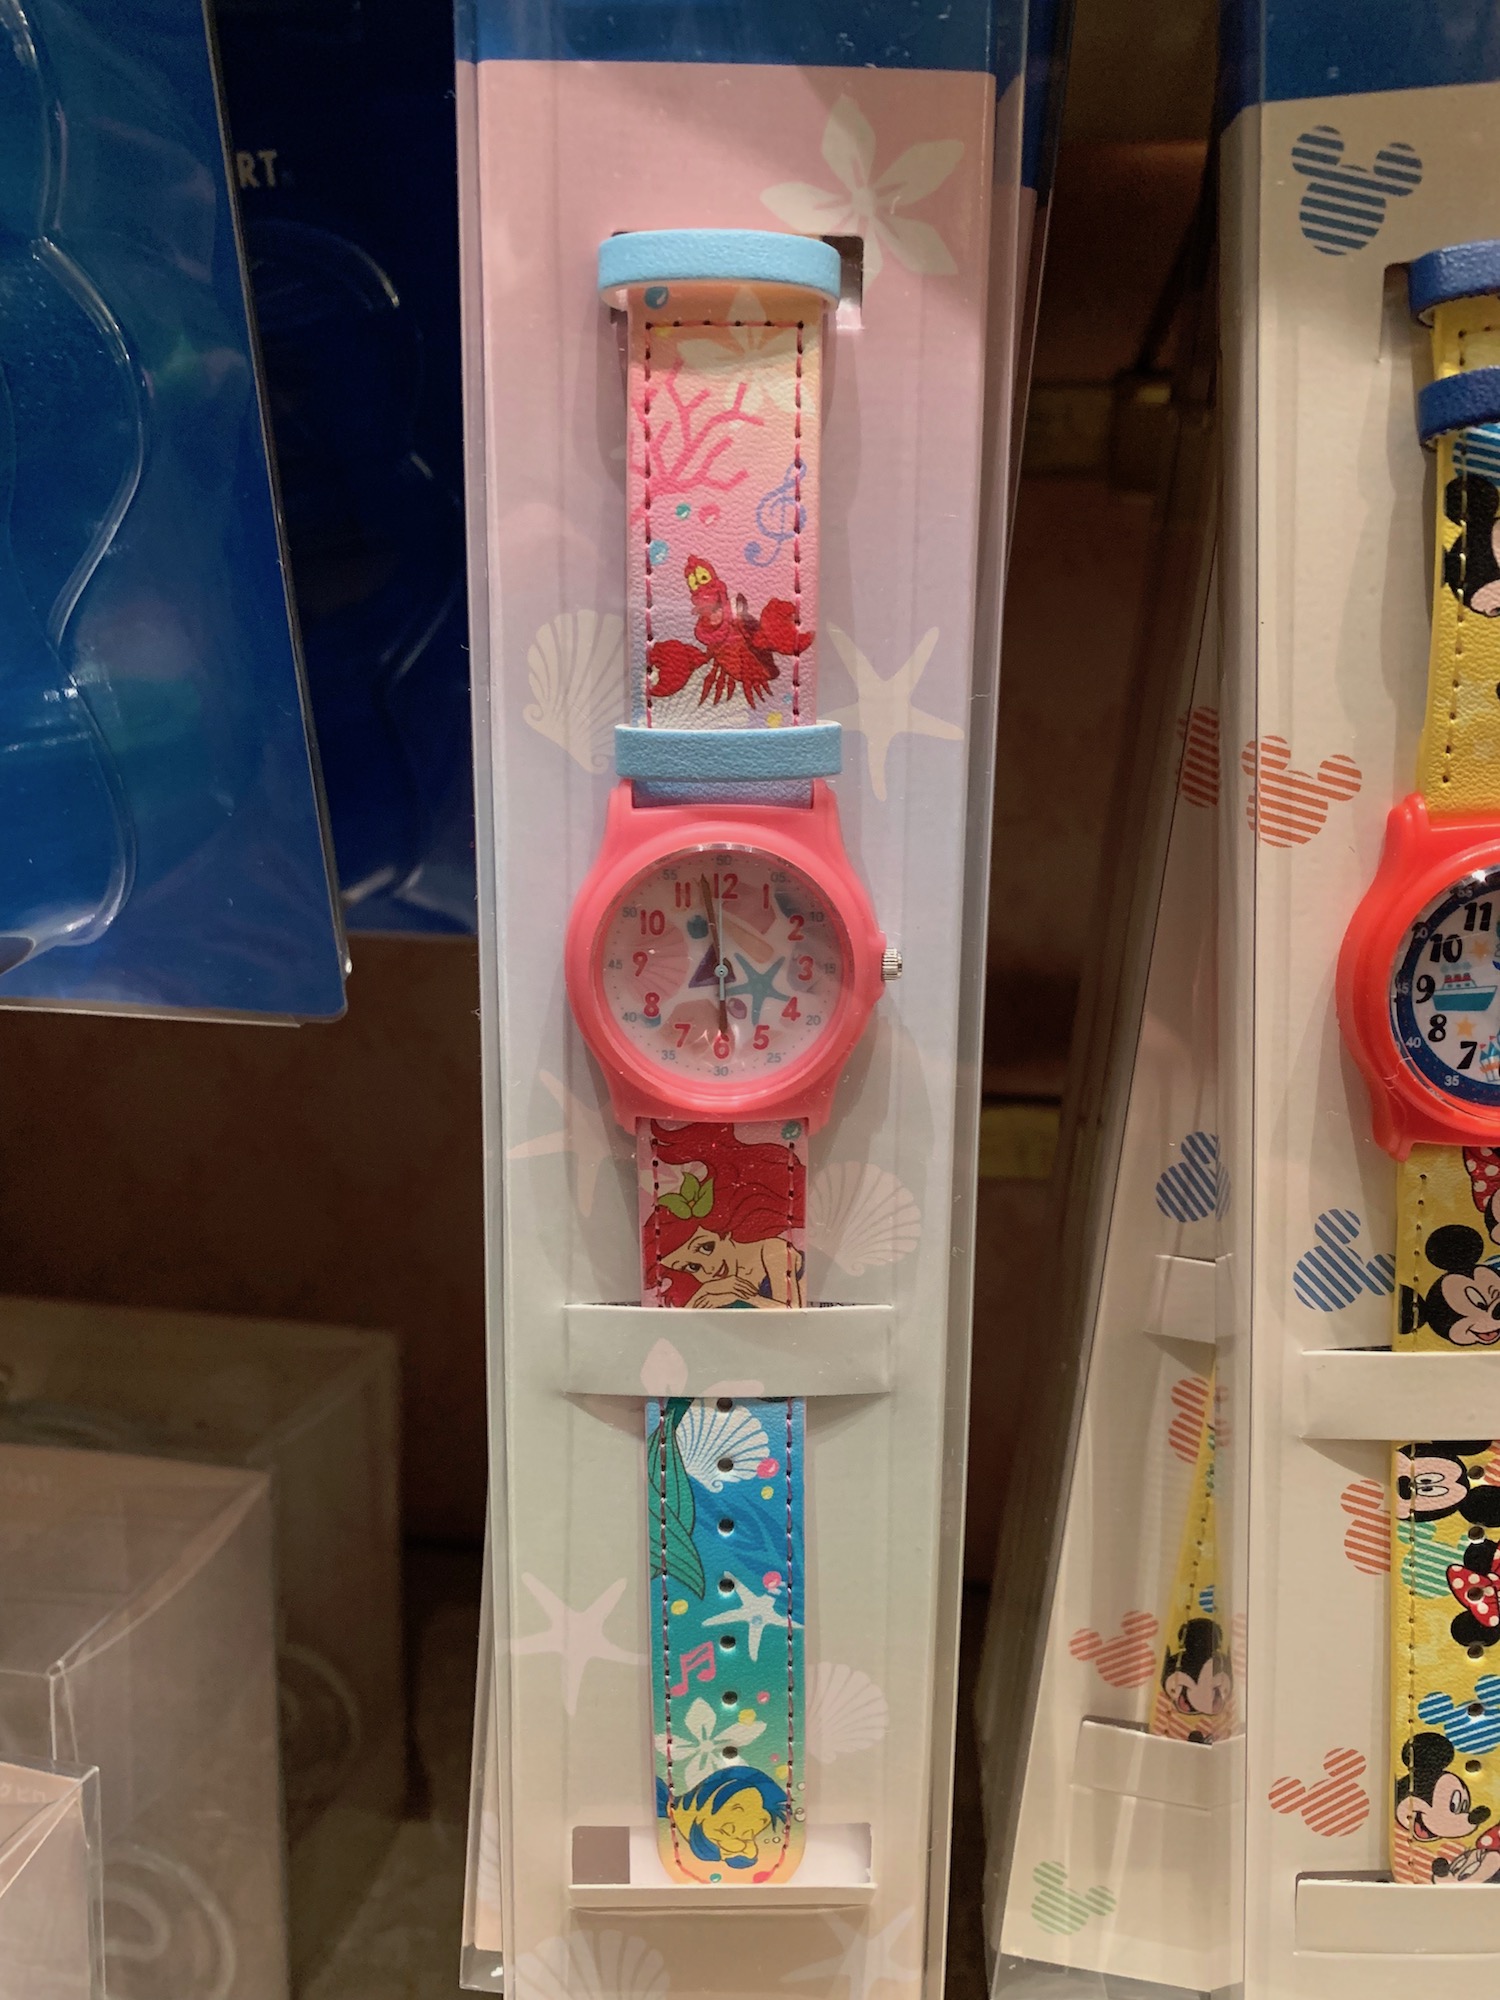 キッズ向け腕時計！東京ディズニーリゾート「ウォッチキッズ」 | 気になるディズニーブログ